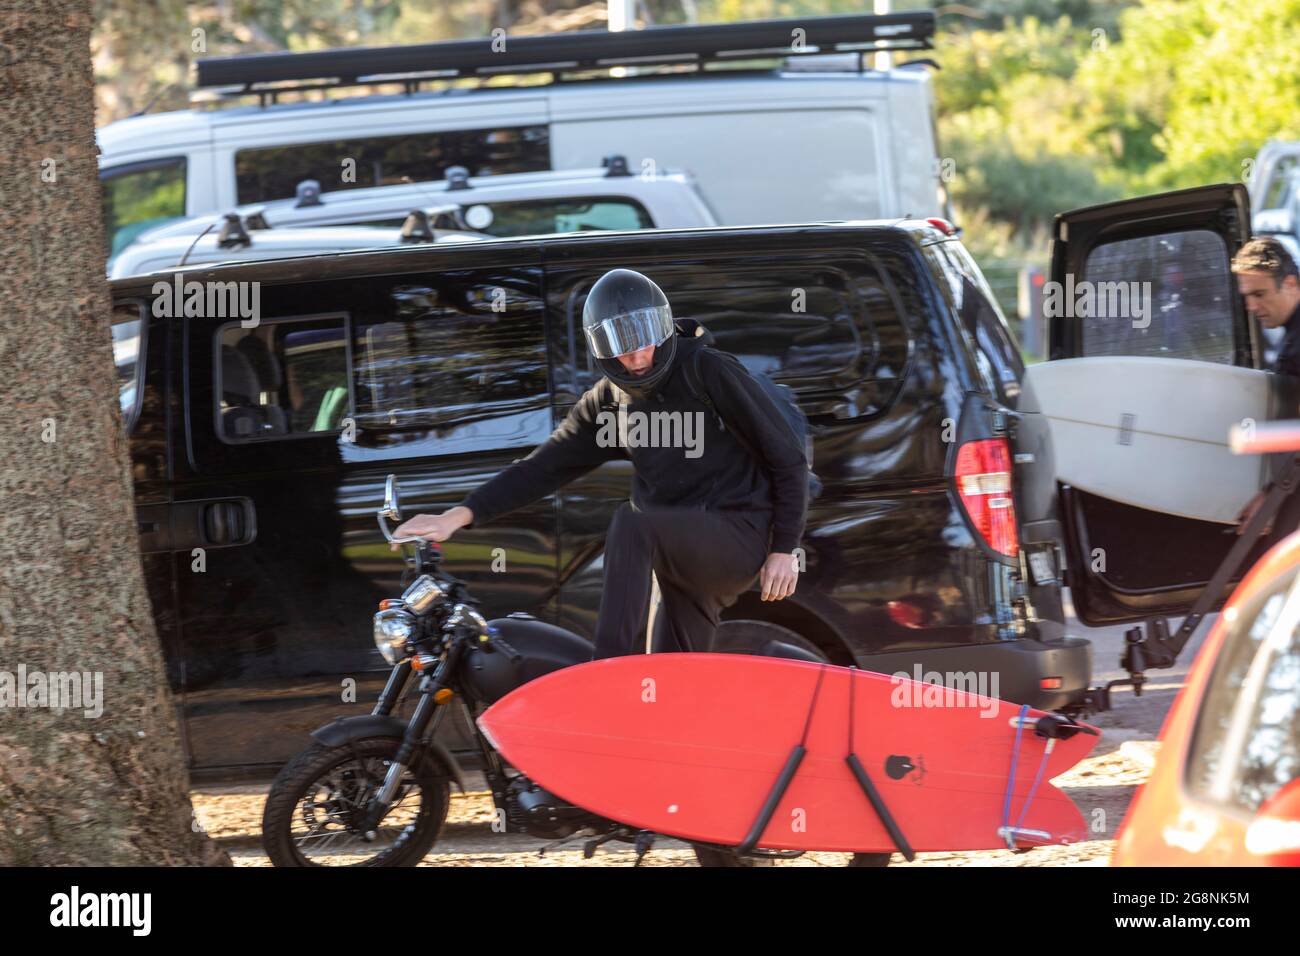 Motorista llevando su tabla de surf en su moto,Sydney,Australia Foto de stock